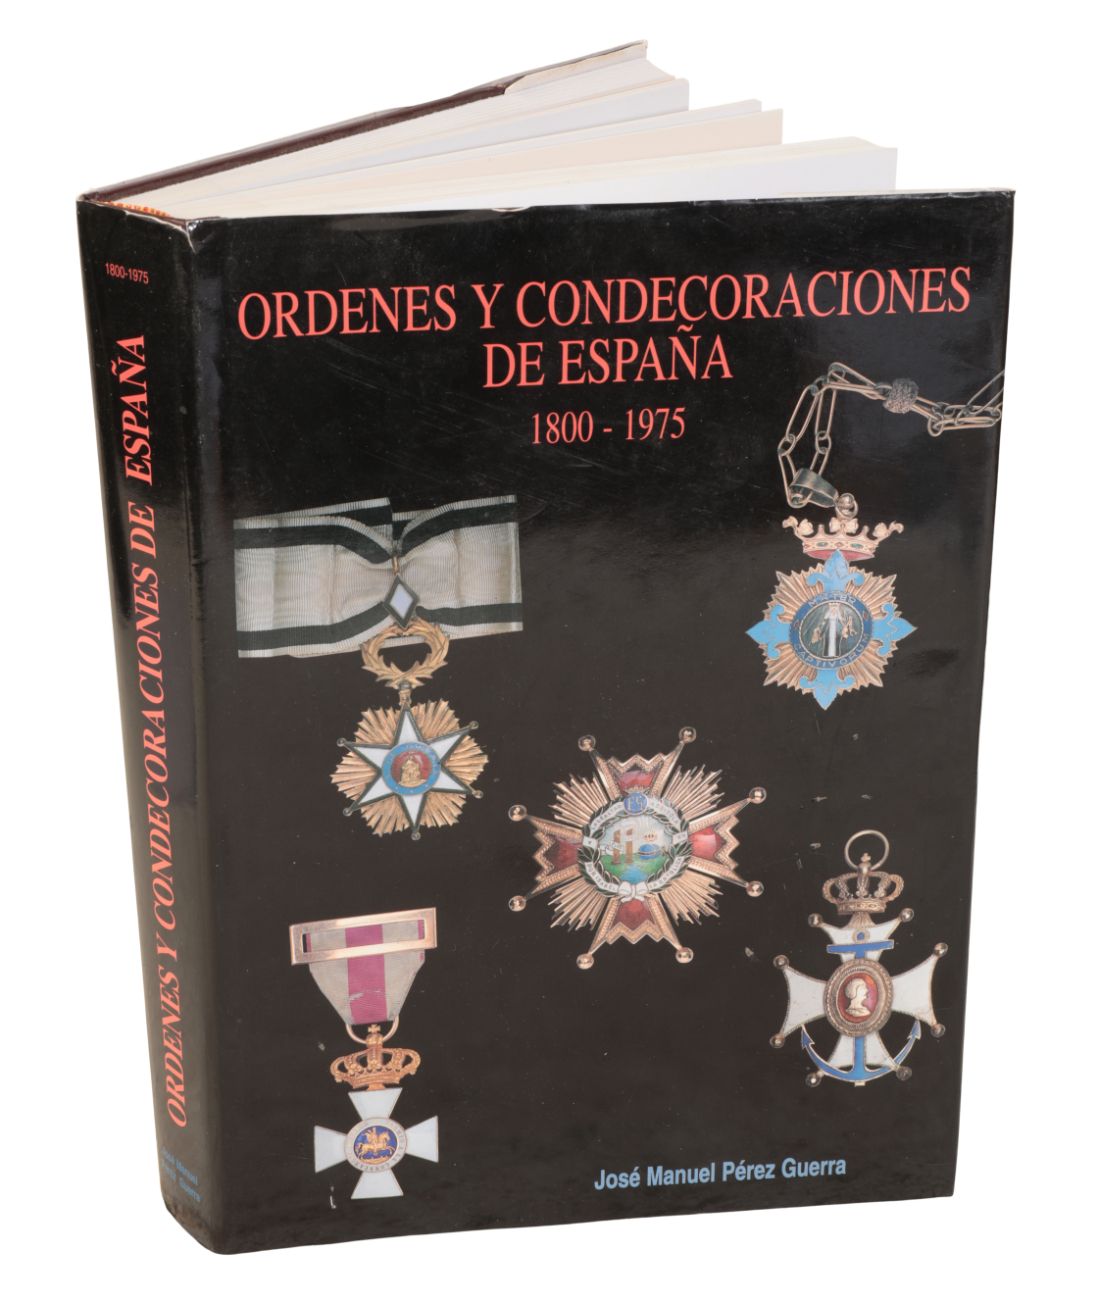 SPAIN ORDENES Y CONDE ORACIONES 3ade22